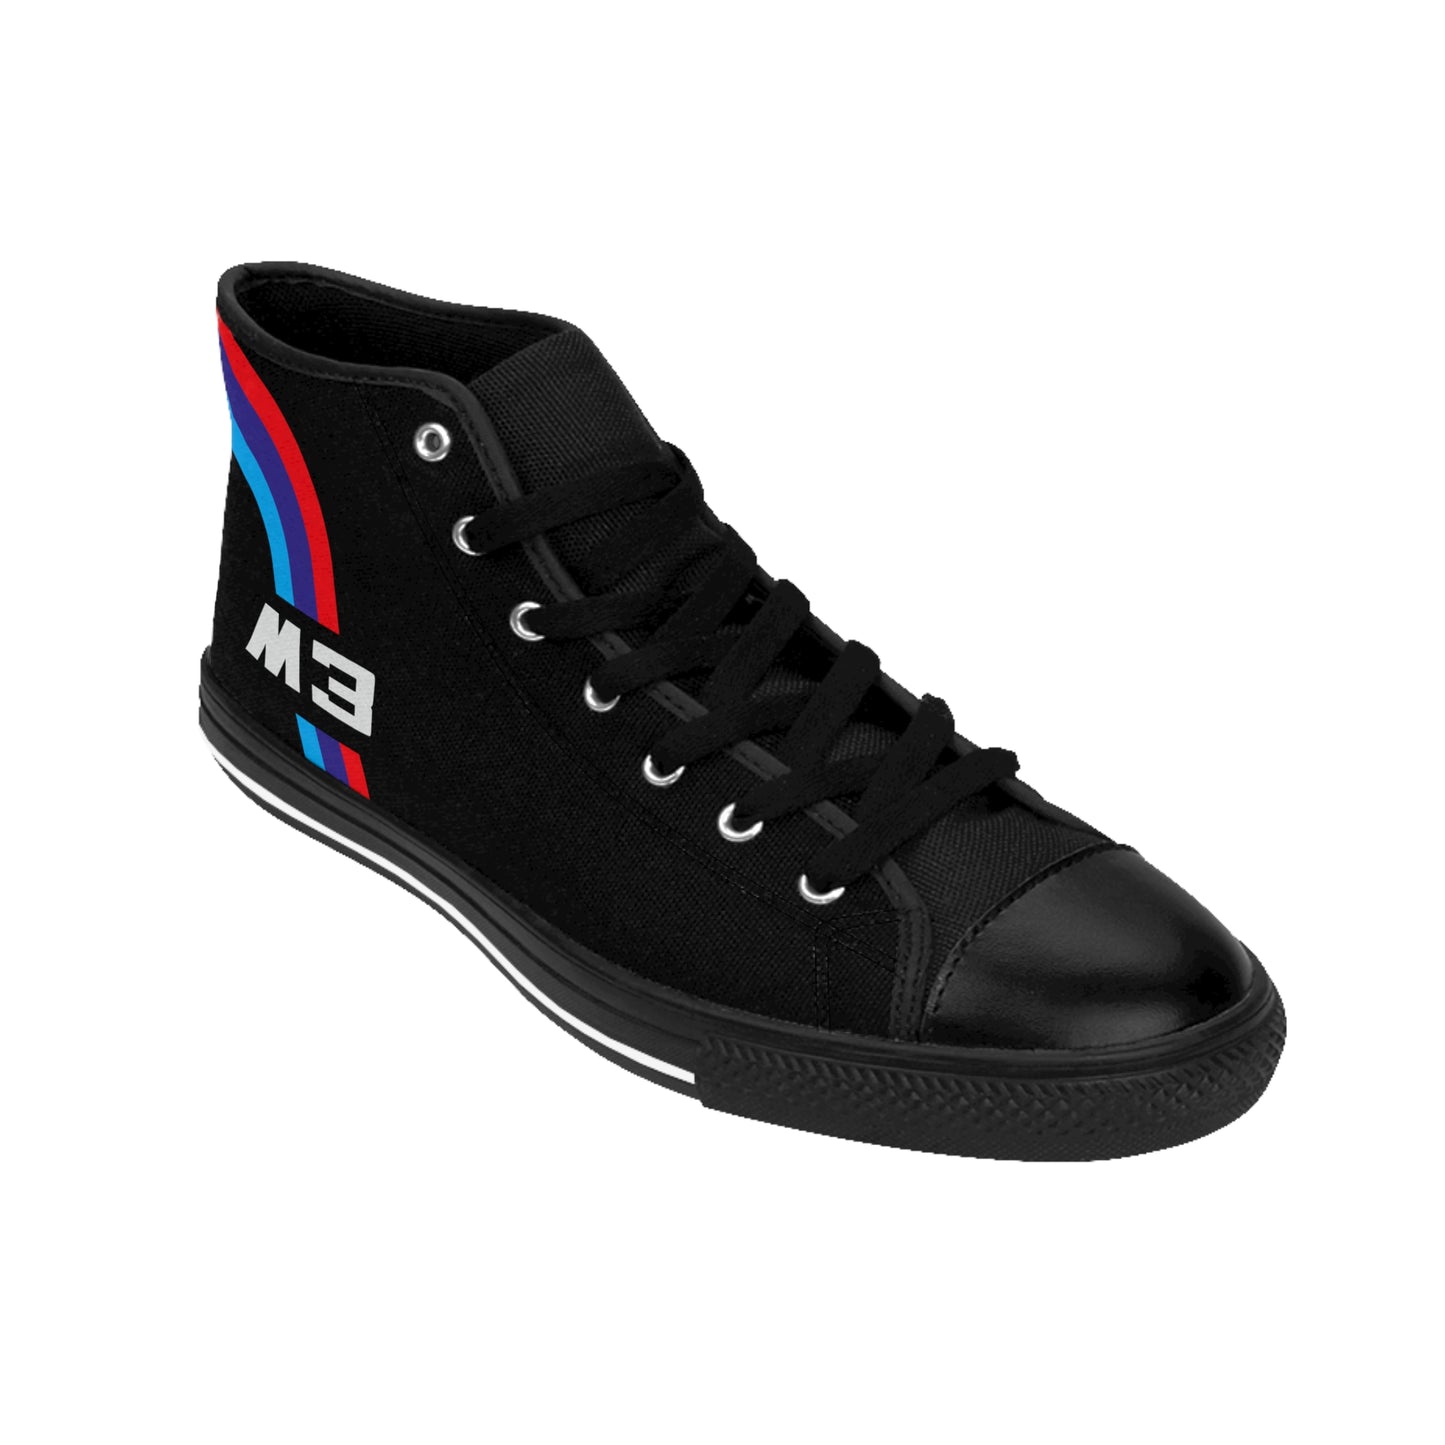 Men's Classic Sneakers - M3